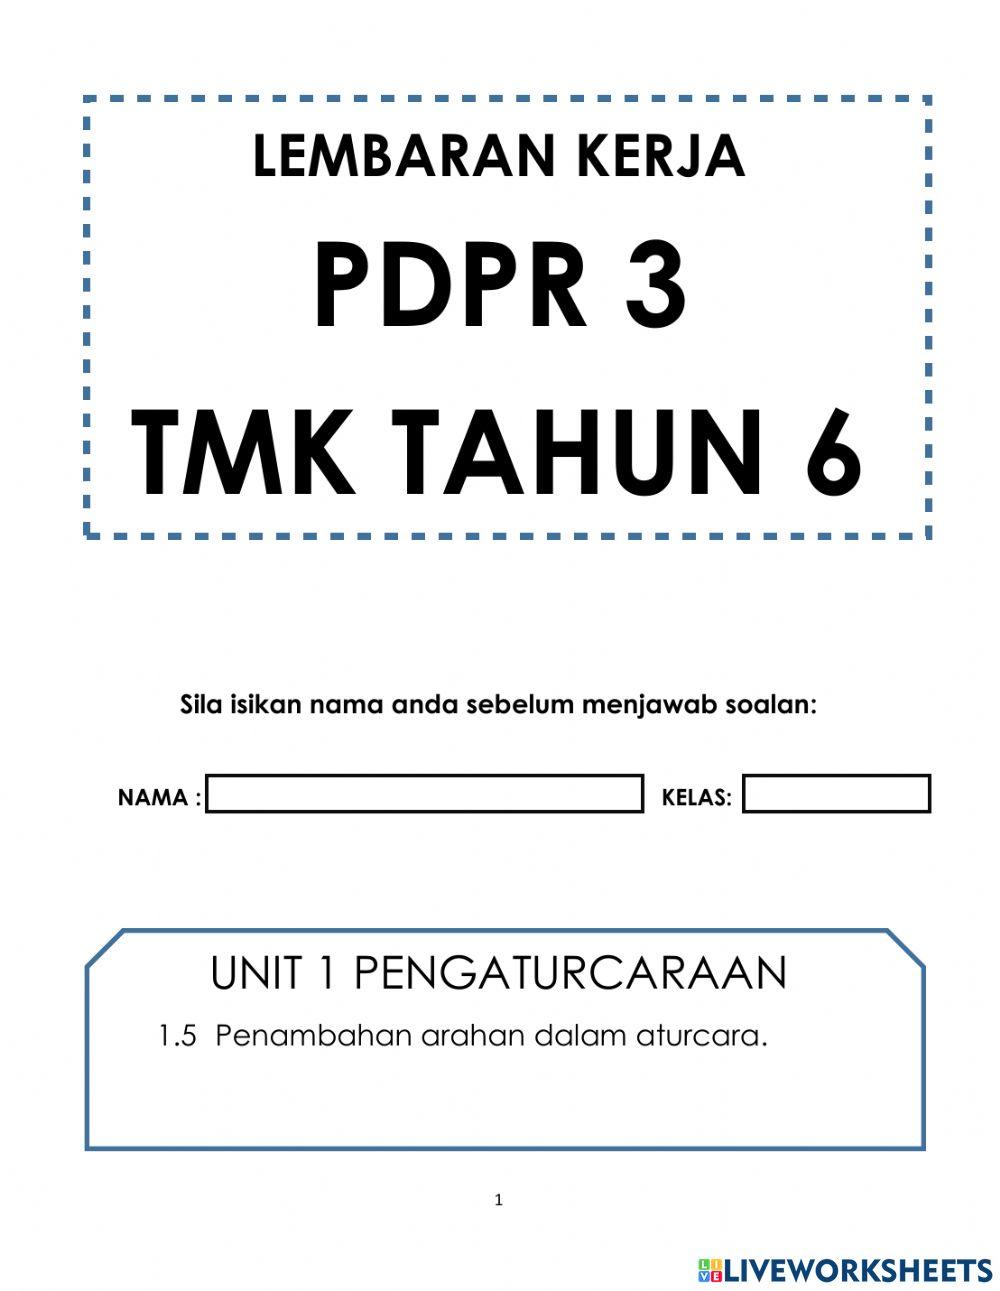 TMK Tahun 6 - PDPR 3